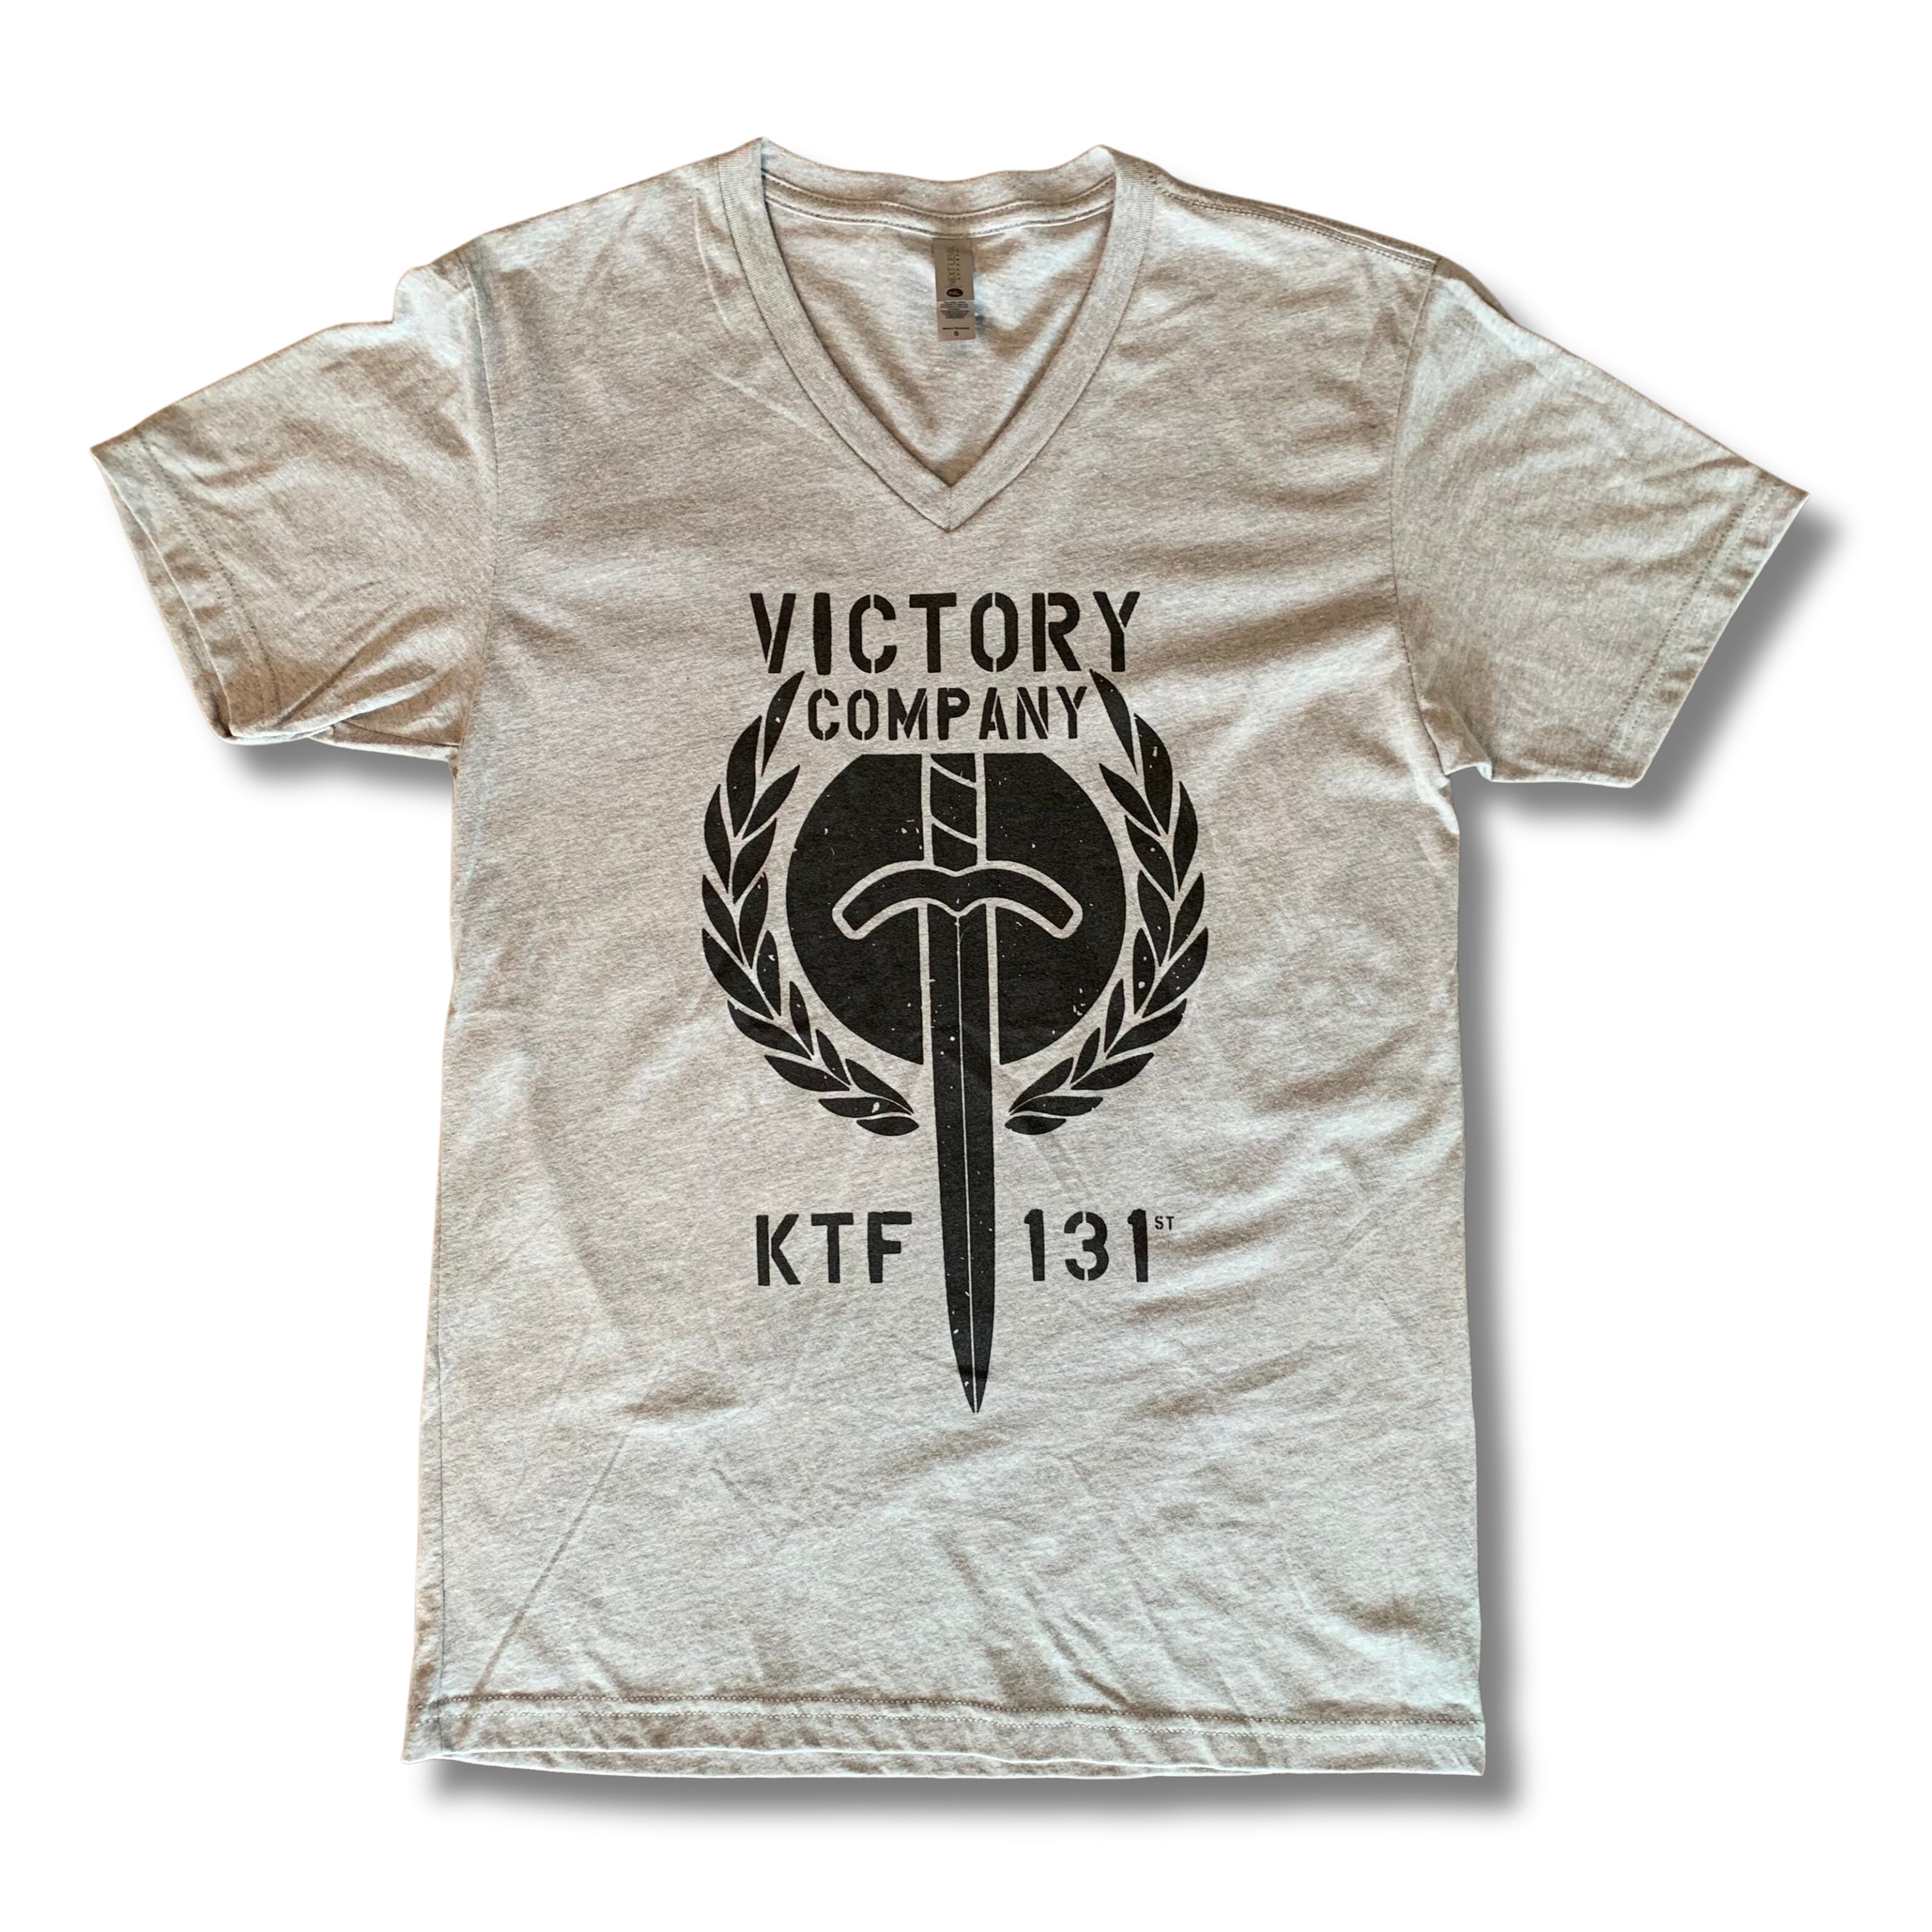 Victory Company Vee Neck Tee